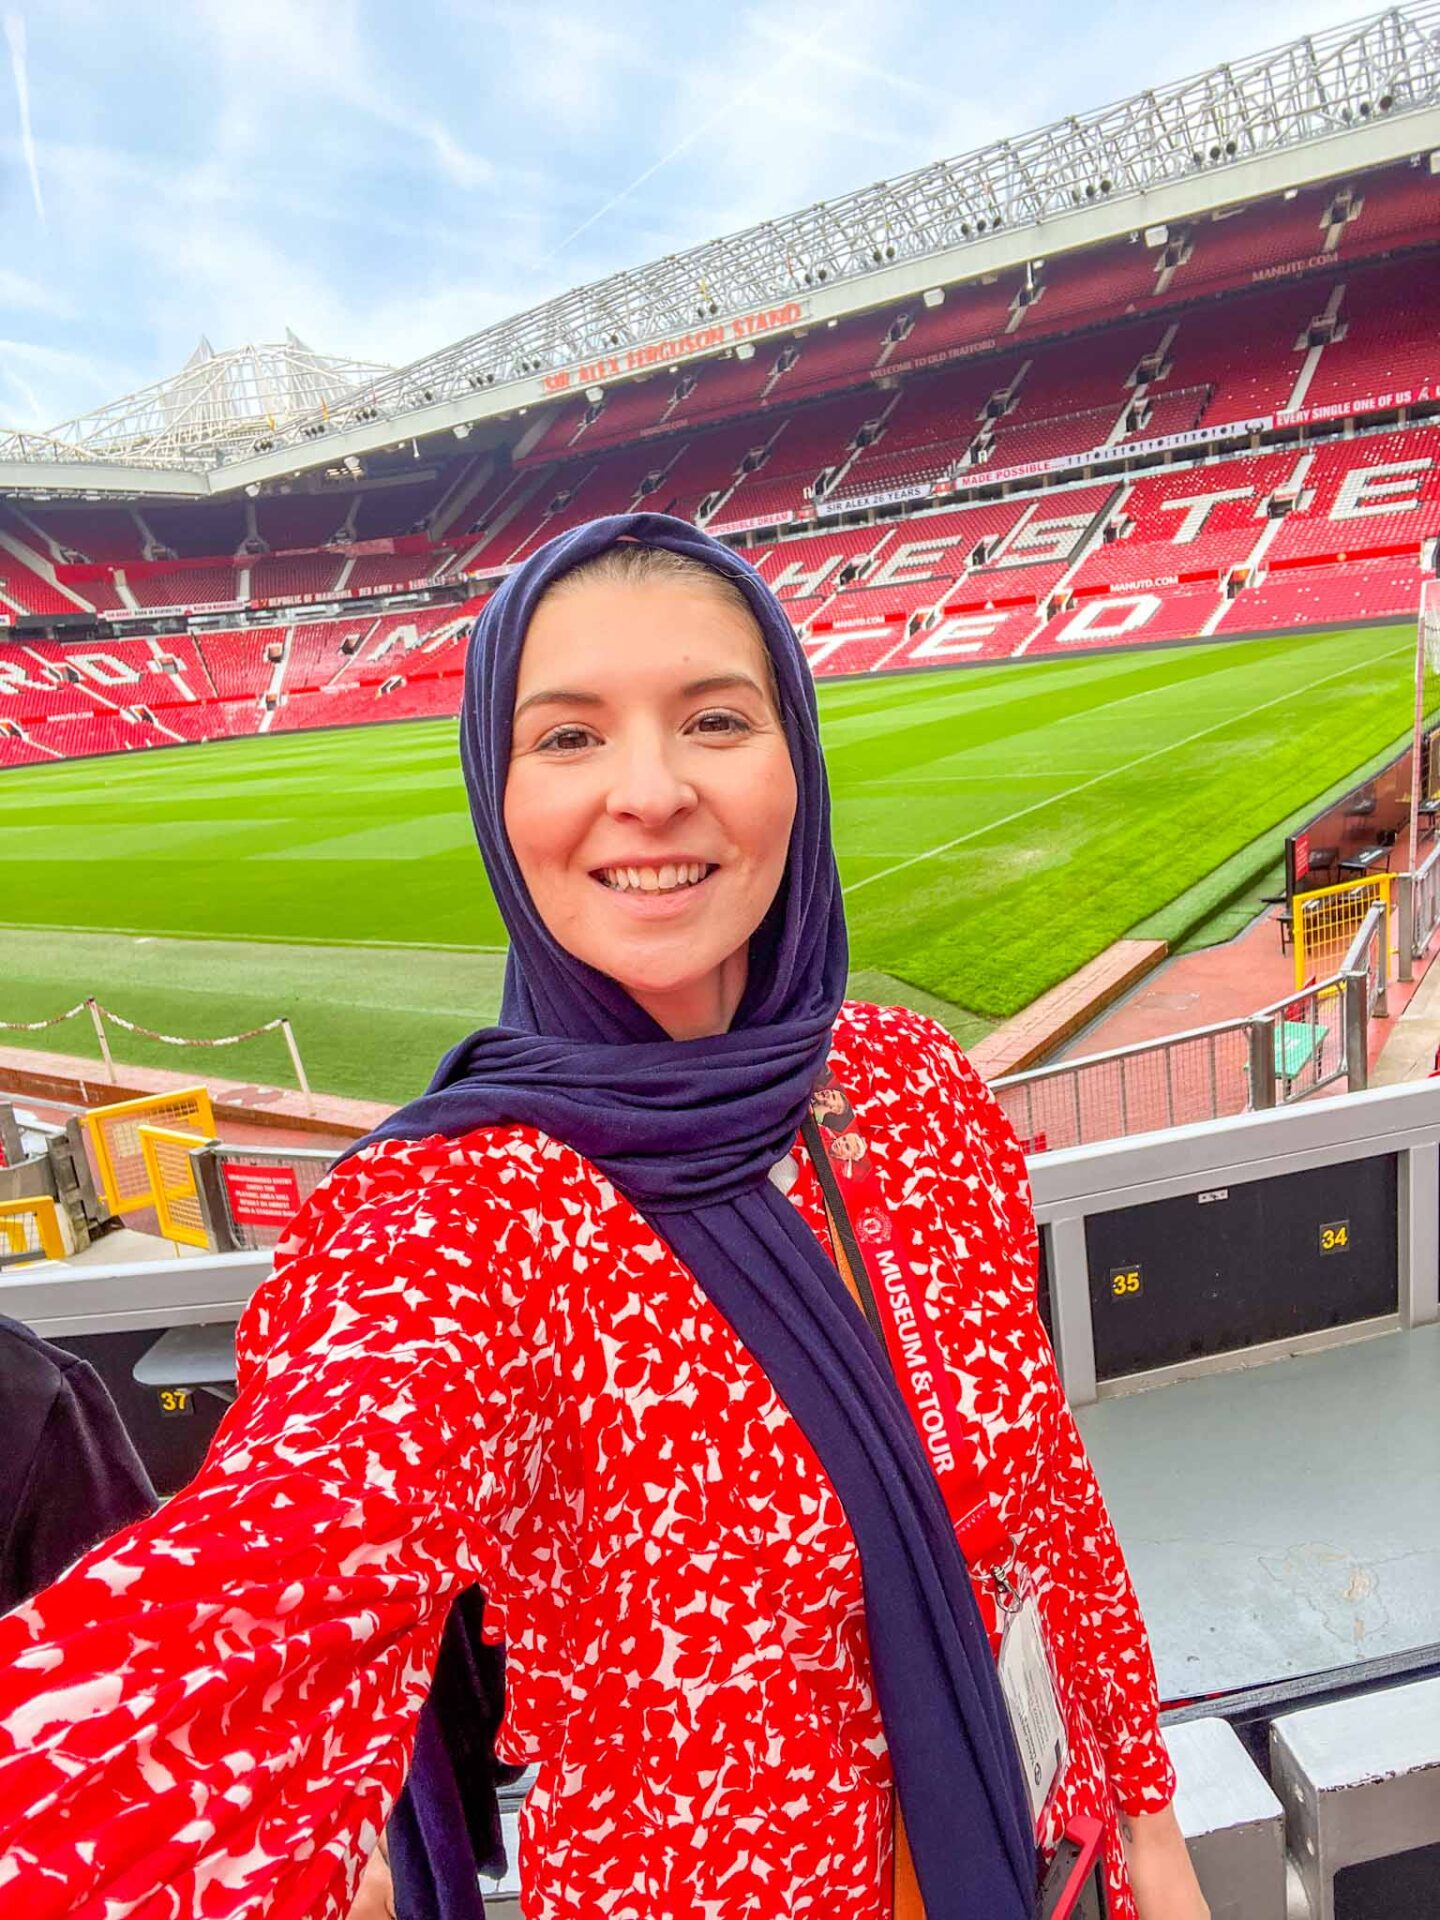 Manchester United Stadium Tour, Ellie Quinn at Manchester United stadium